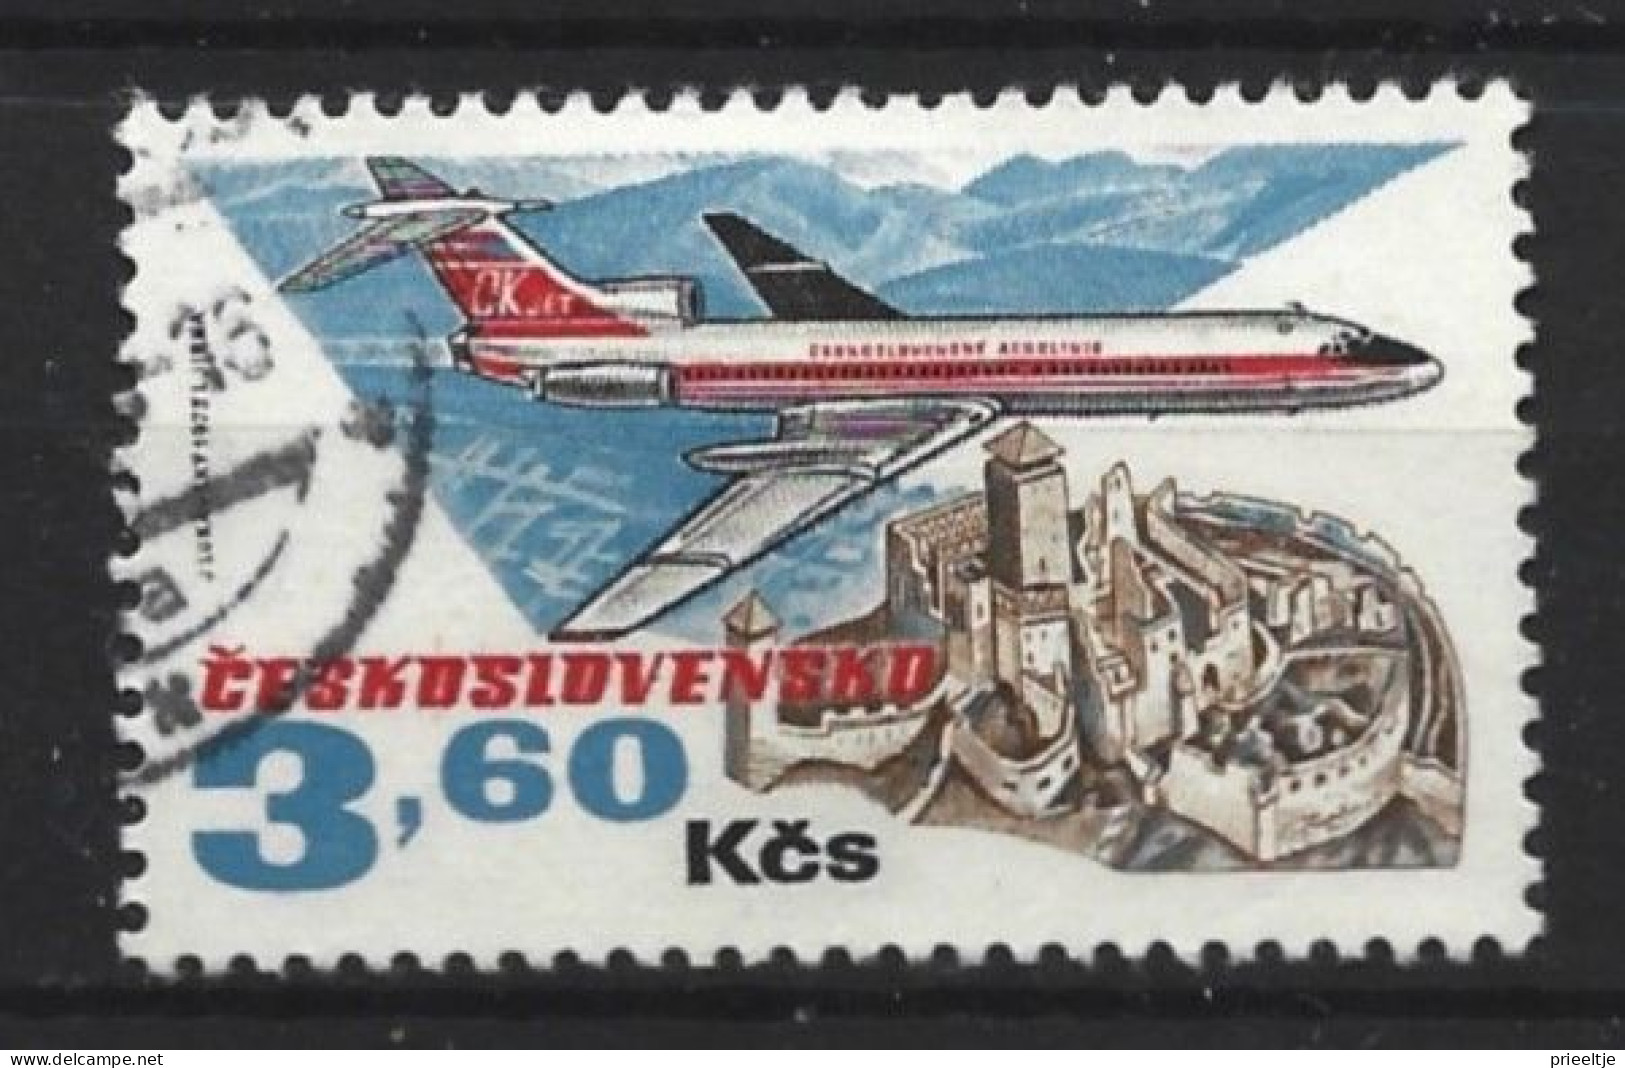 Ceskoslovensko 1973 Airplane Y.T.  2016 (0) - Gebraucht